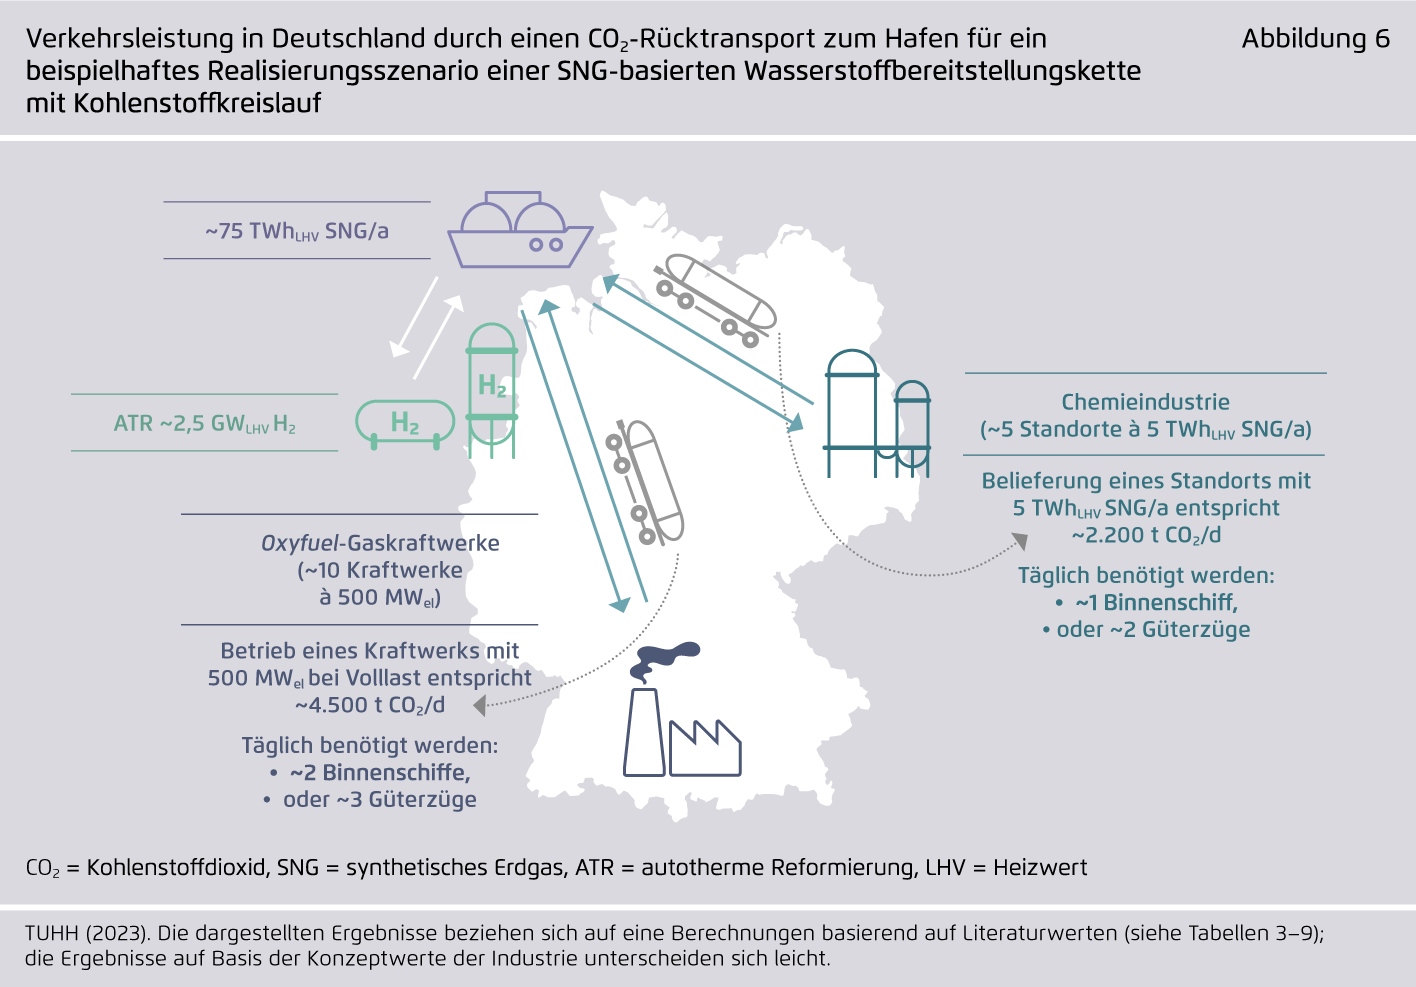 Preview for Verkehrsleistung in Deutschland durch einen CO2-Rücktransport zum Hafen für ein beispielhaftes Realisierungsszenario einer SNG-basierten Wasserstoffbereitstellungskette mit Kohlenstoffkreislauf